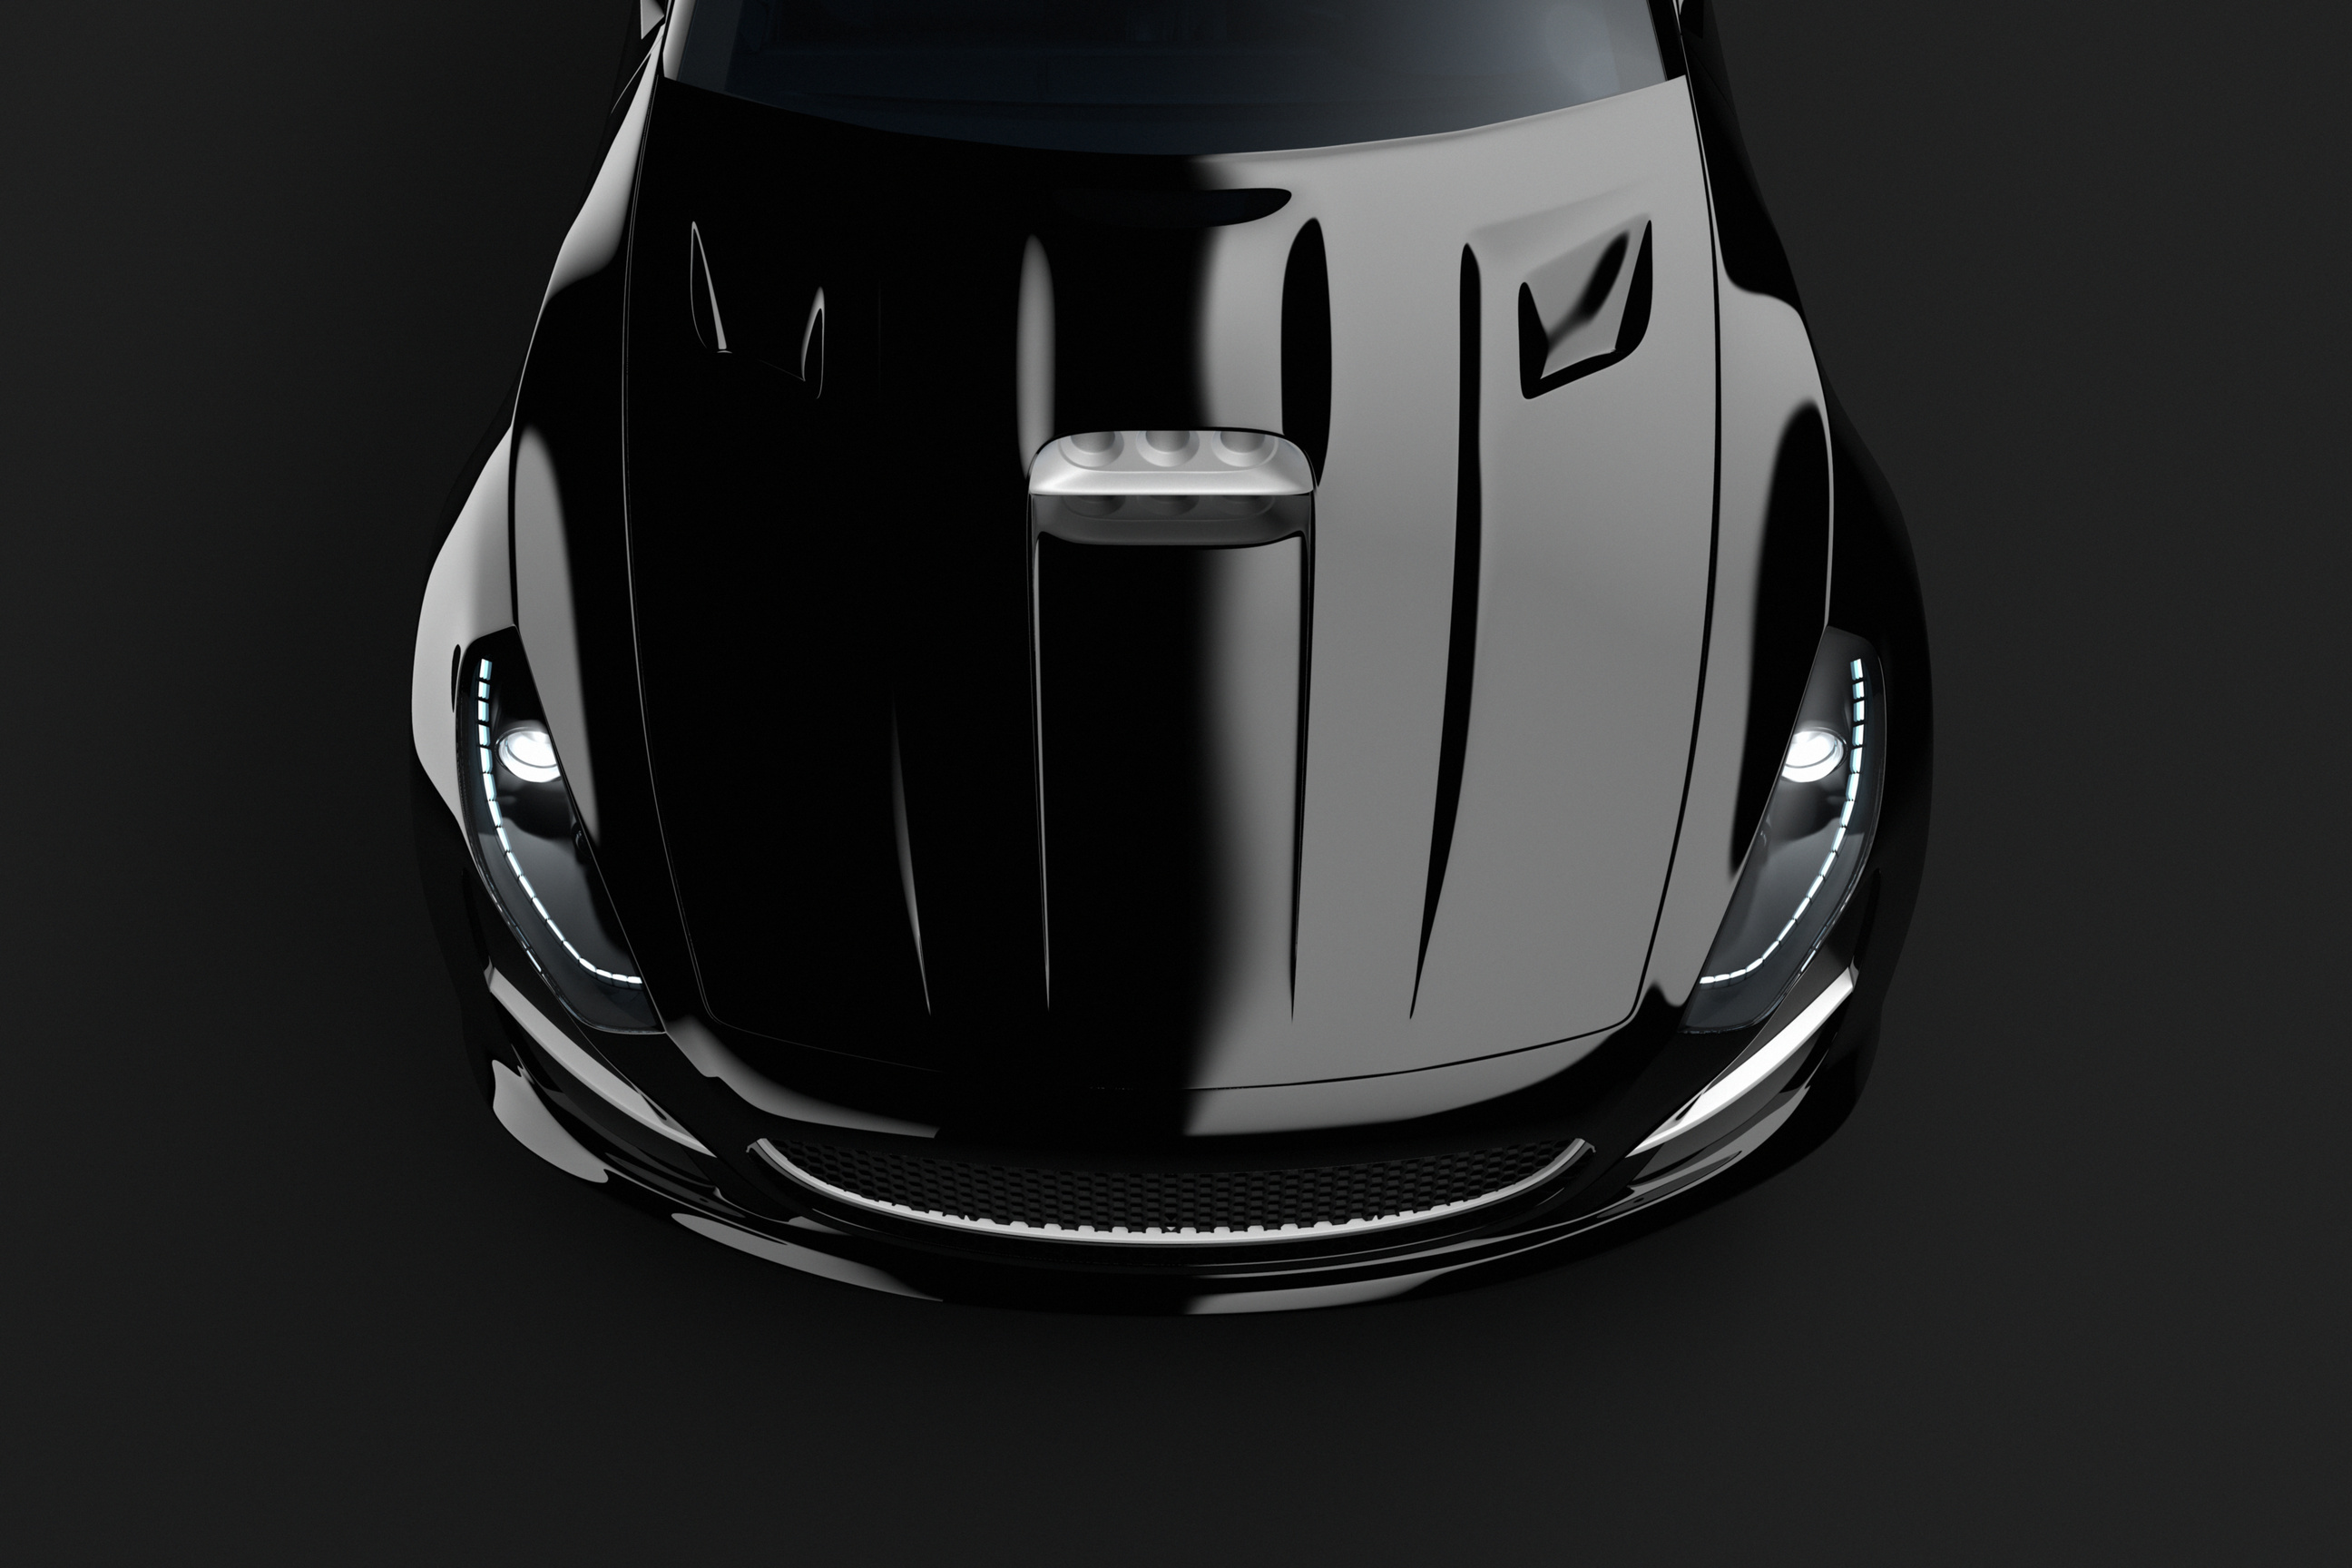 Black sport car on dark background